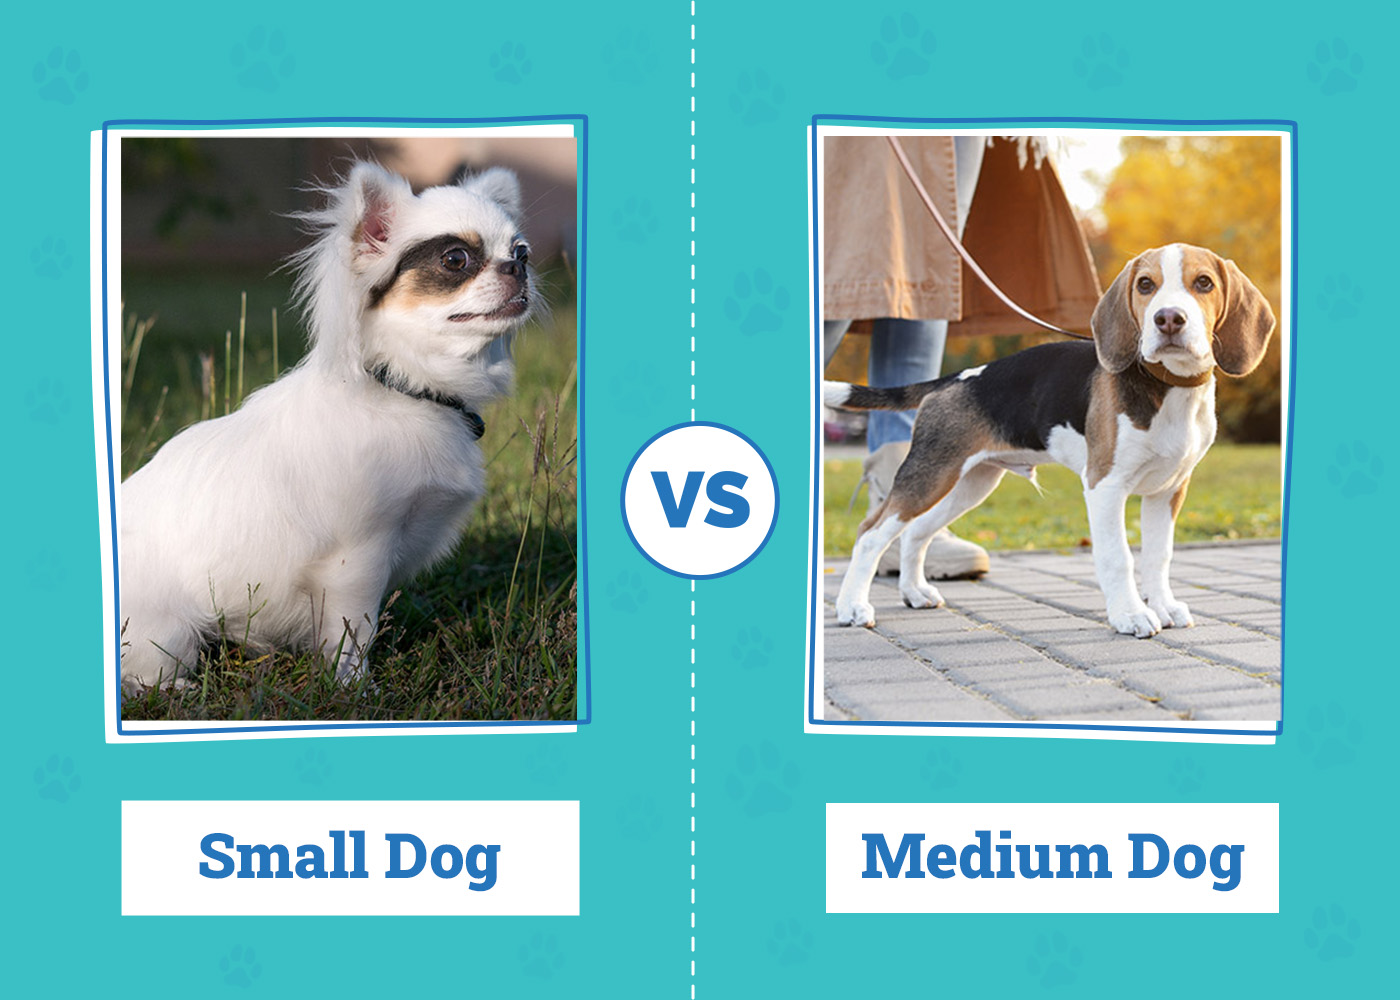 Small Dog vs Medium Dog